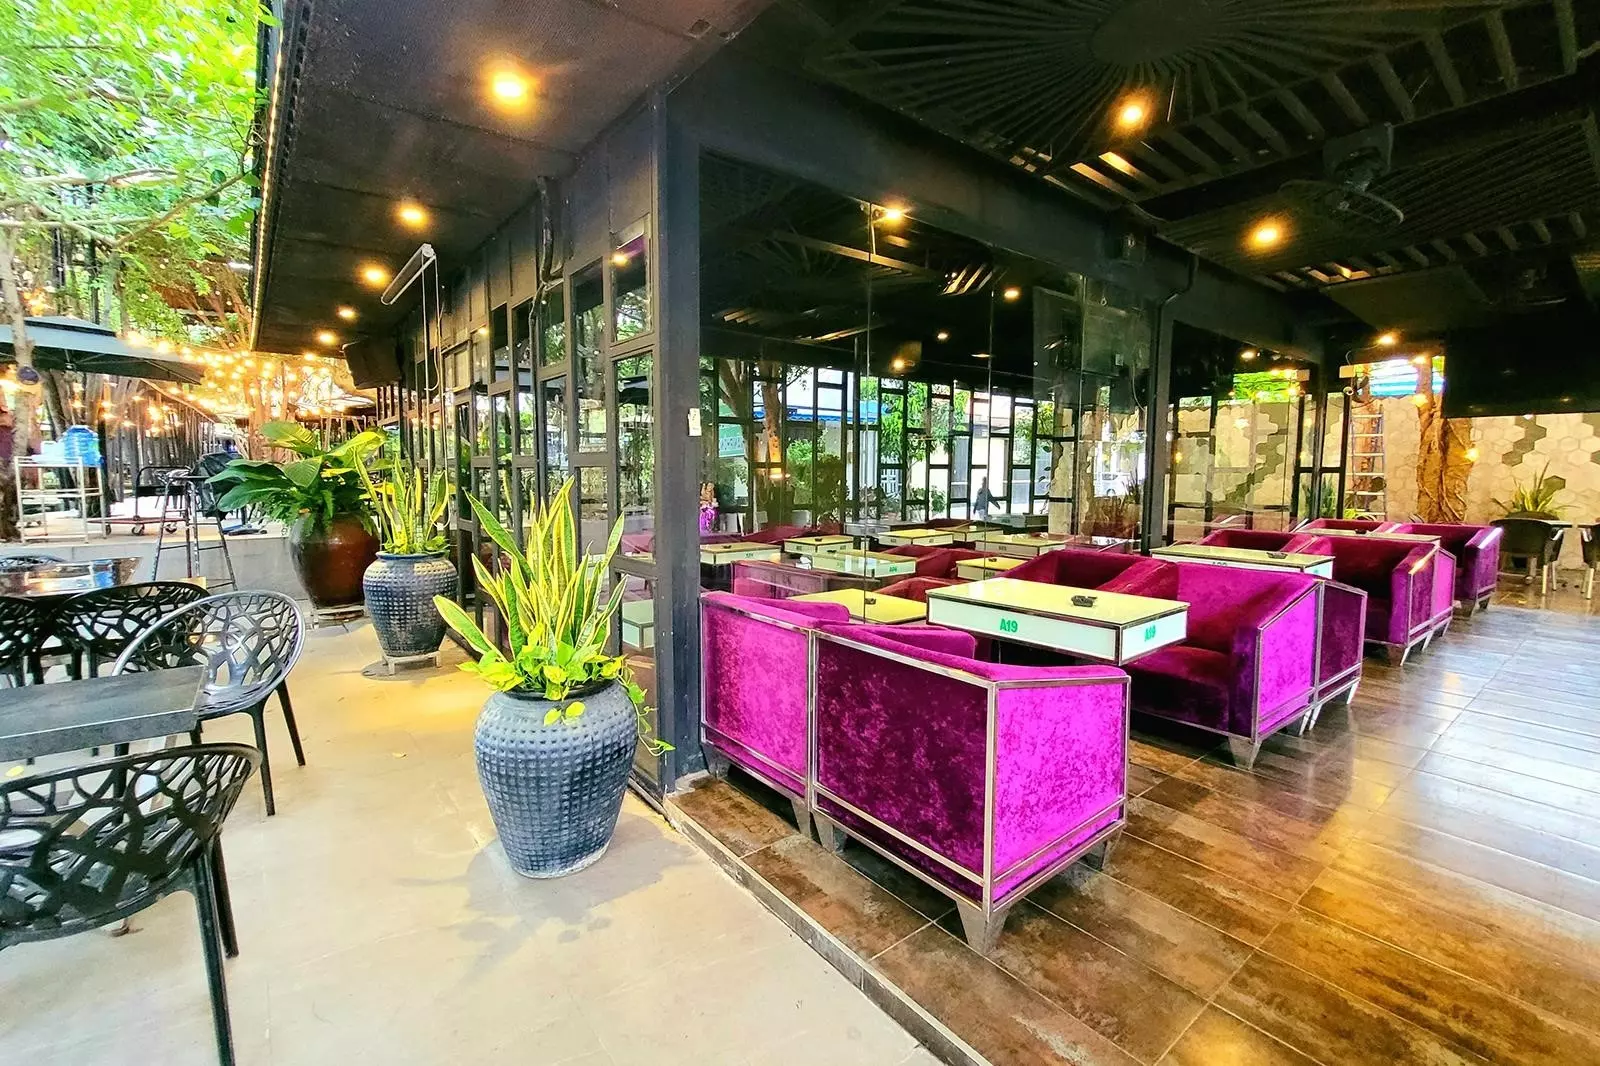 Vườn Xanh Coffee là một quán cà phê mang đậm phong cách thiên nhiên, với không gian xanh mát và thoáng đãng. Tại đây, bạn có thể thưởng thức những ly cà phê thơm ngon và thả hồn vào không gian yên bình, tạo nên một trải nghiệm thú vị và thư giãn.